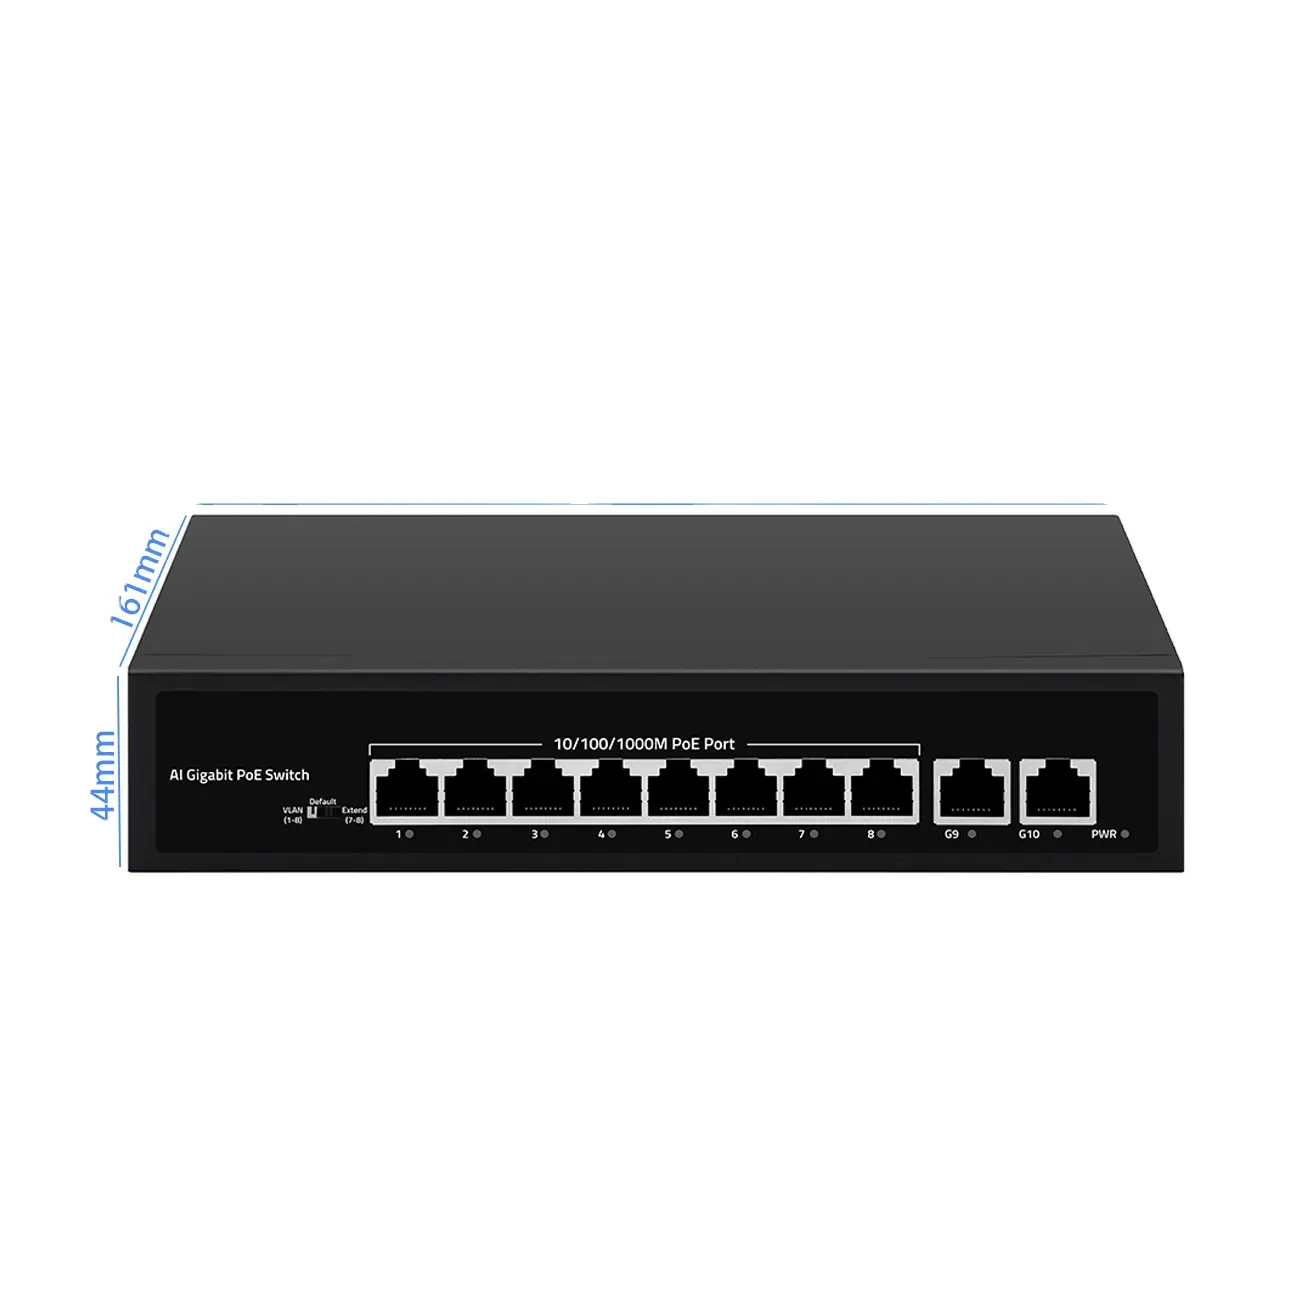 빠른 10/100/1000Mbps 스위치 10 포트 포 인터넷 스위치 지원 VLAN, 기본 및 확장 모드